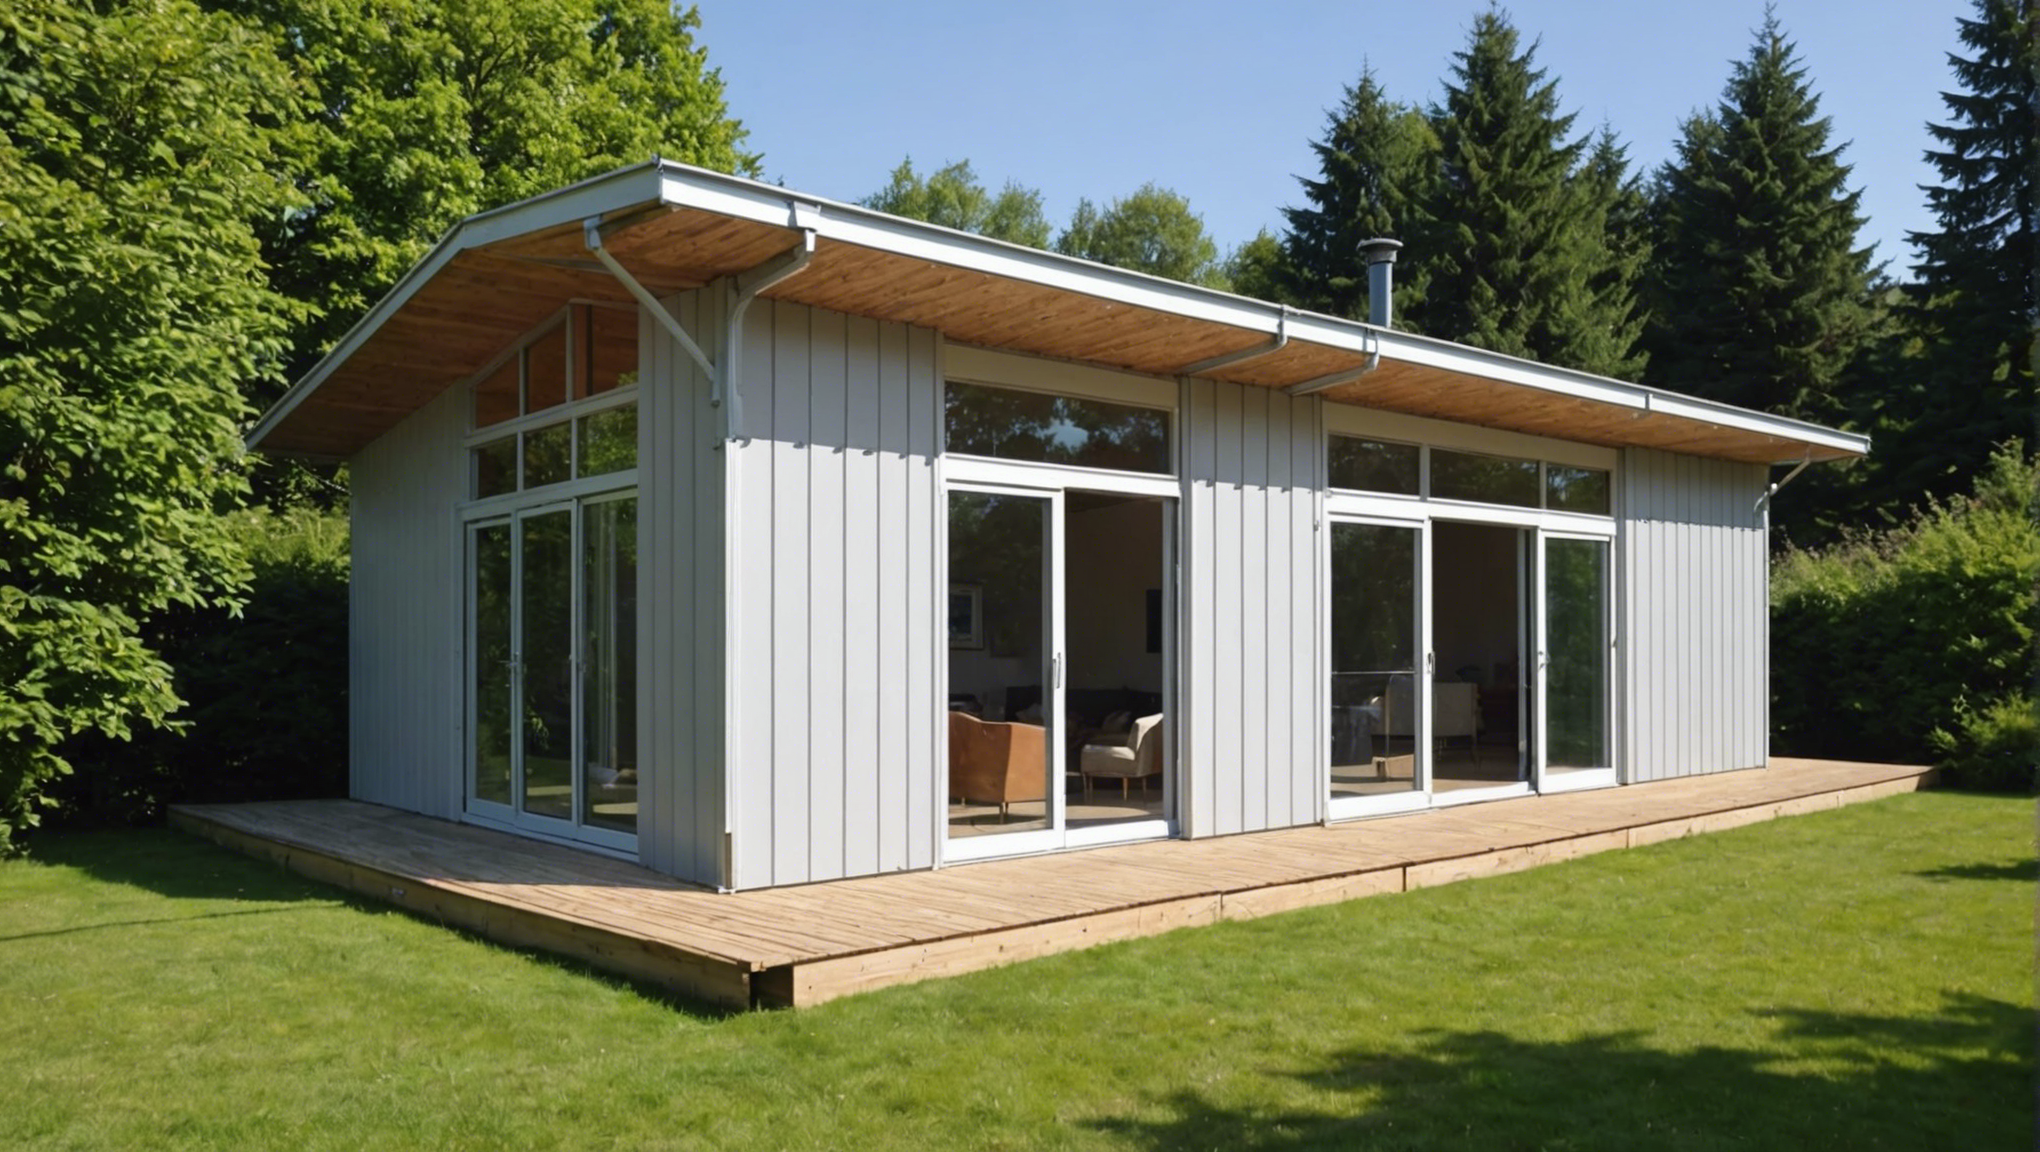 découvrez les étapes pour réaliser une isolation de toiture par l'intérieur et améliorer l'efficacité énergétique de votre maison. conseils, matériaux et techniques à connaître.